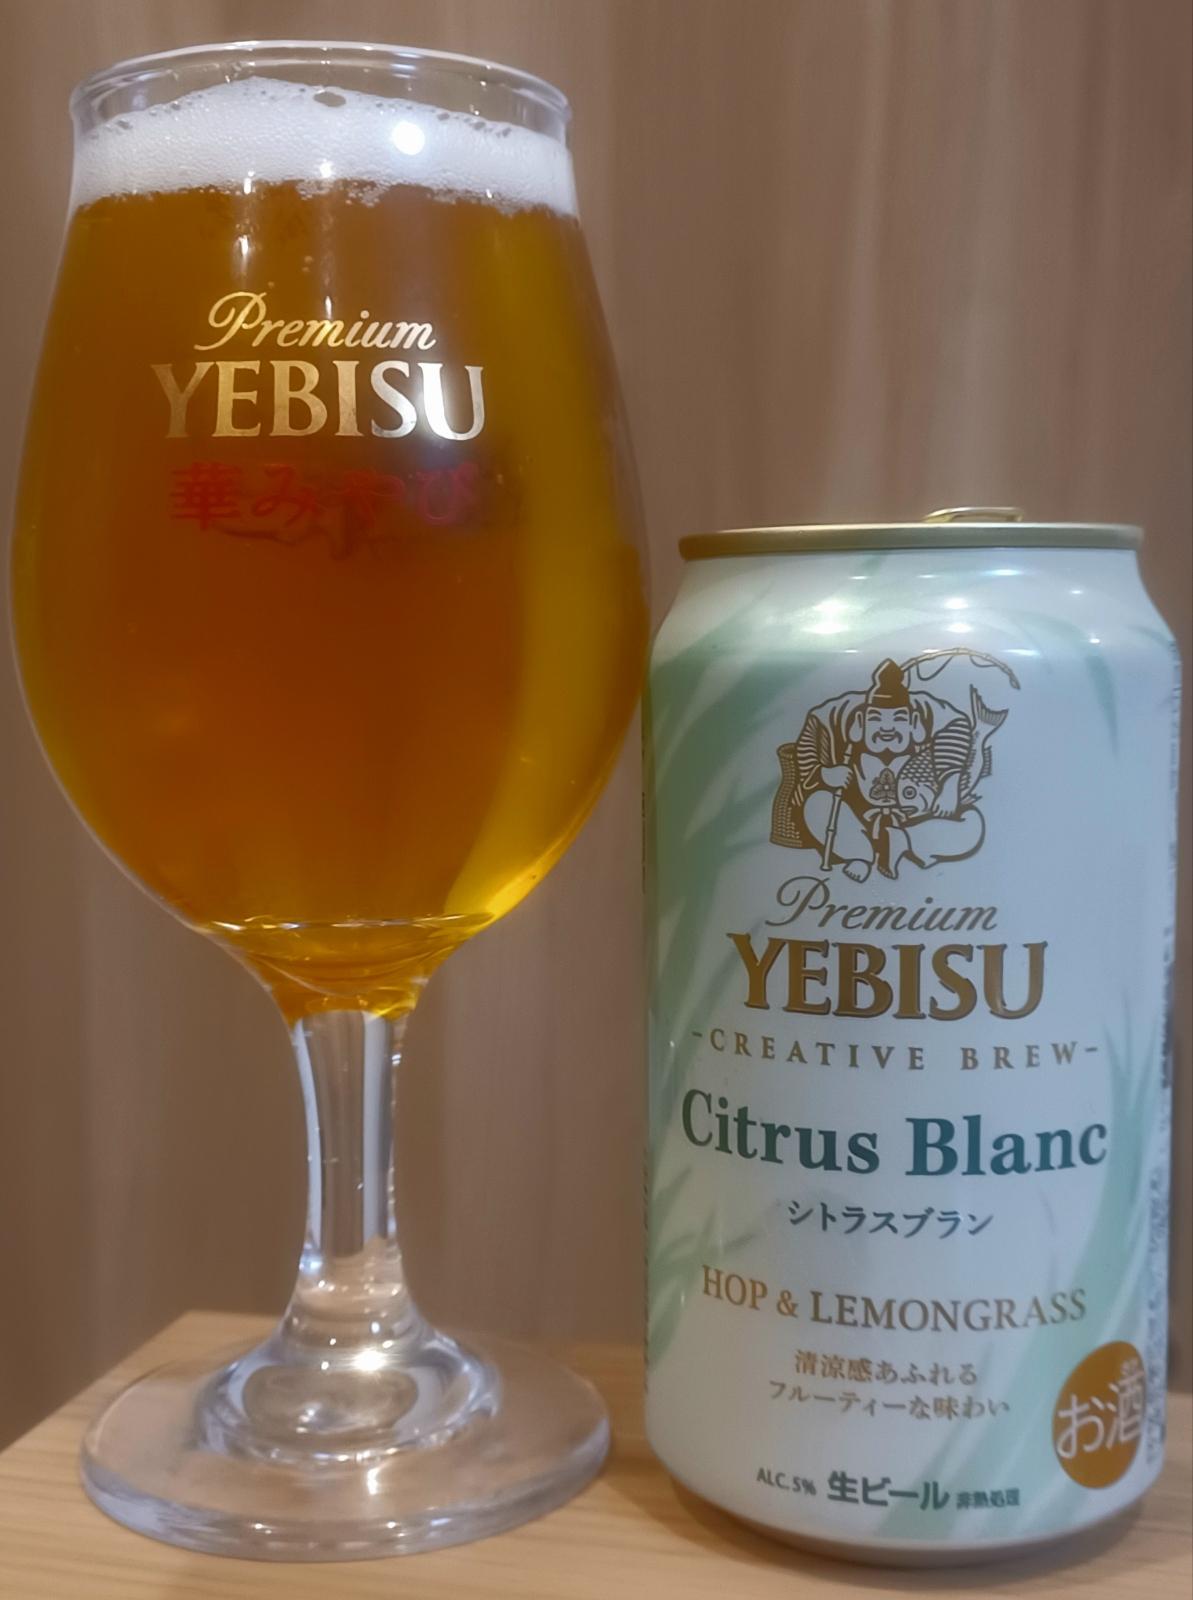 Premium Yebisu Creative Brew: Citrus Blanc